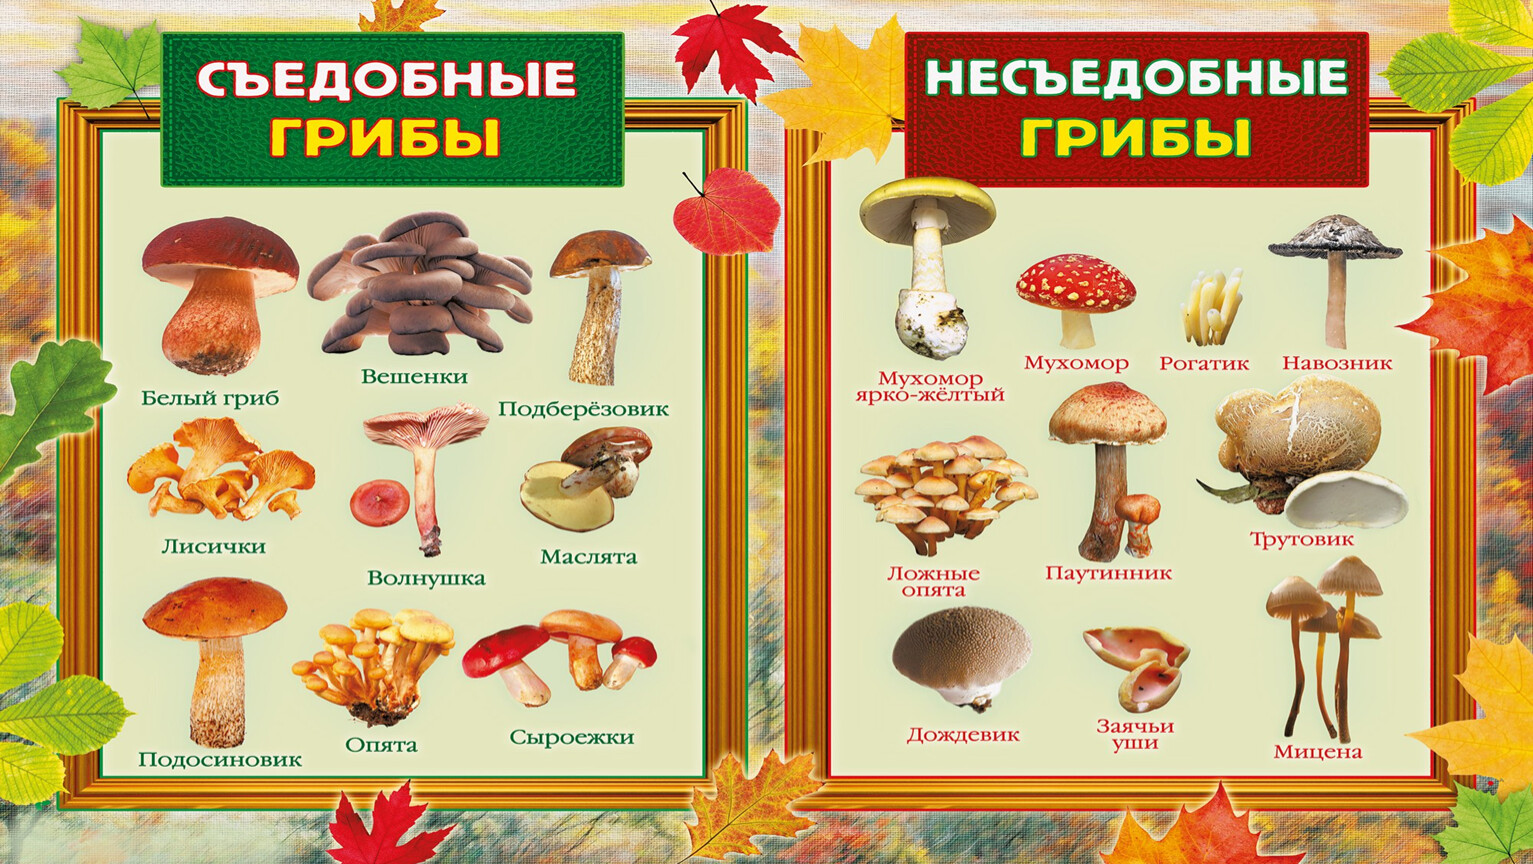 Грибы вы знаете какие съедобные. Ядовитые грибы и съедобные грибы 2 класс окружающий мир. Съедобные и несъедобные грибы 2 класс окружающий мир. Мини энциклопедия съедобные и несъедобные грибы. Съедобные грибы и несъедобные грибы окружающий мир 3.